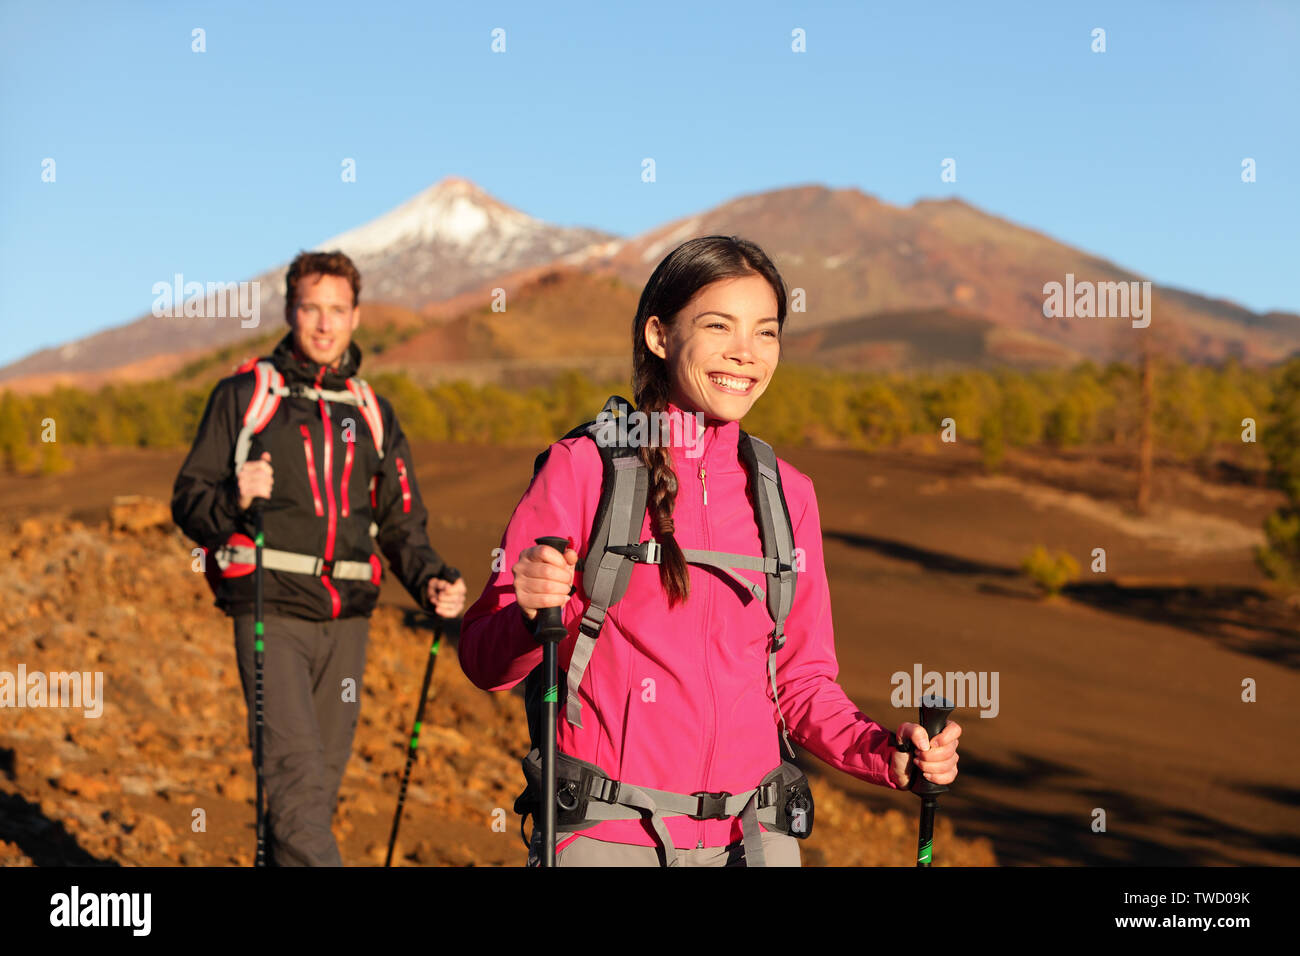 La gente de senderismo - estilo de vida activo y saludable pareja. Excursionistas caminando en la hermosa naturaleza del paisaje de montaña. Hombre y mujer excursionistas caminando durante la caminata en el volcán Teide, Tenerife, Islas Canarias, España. Foto de stock